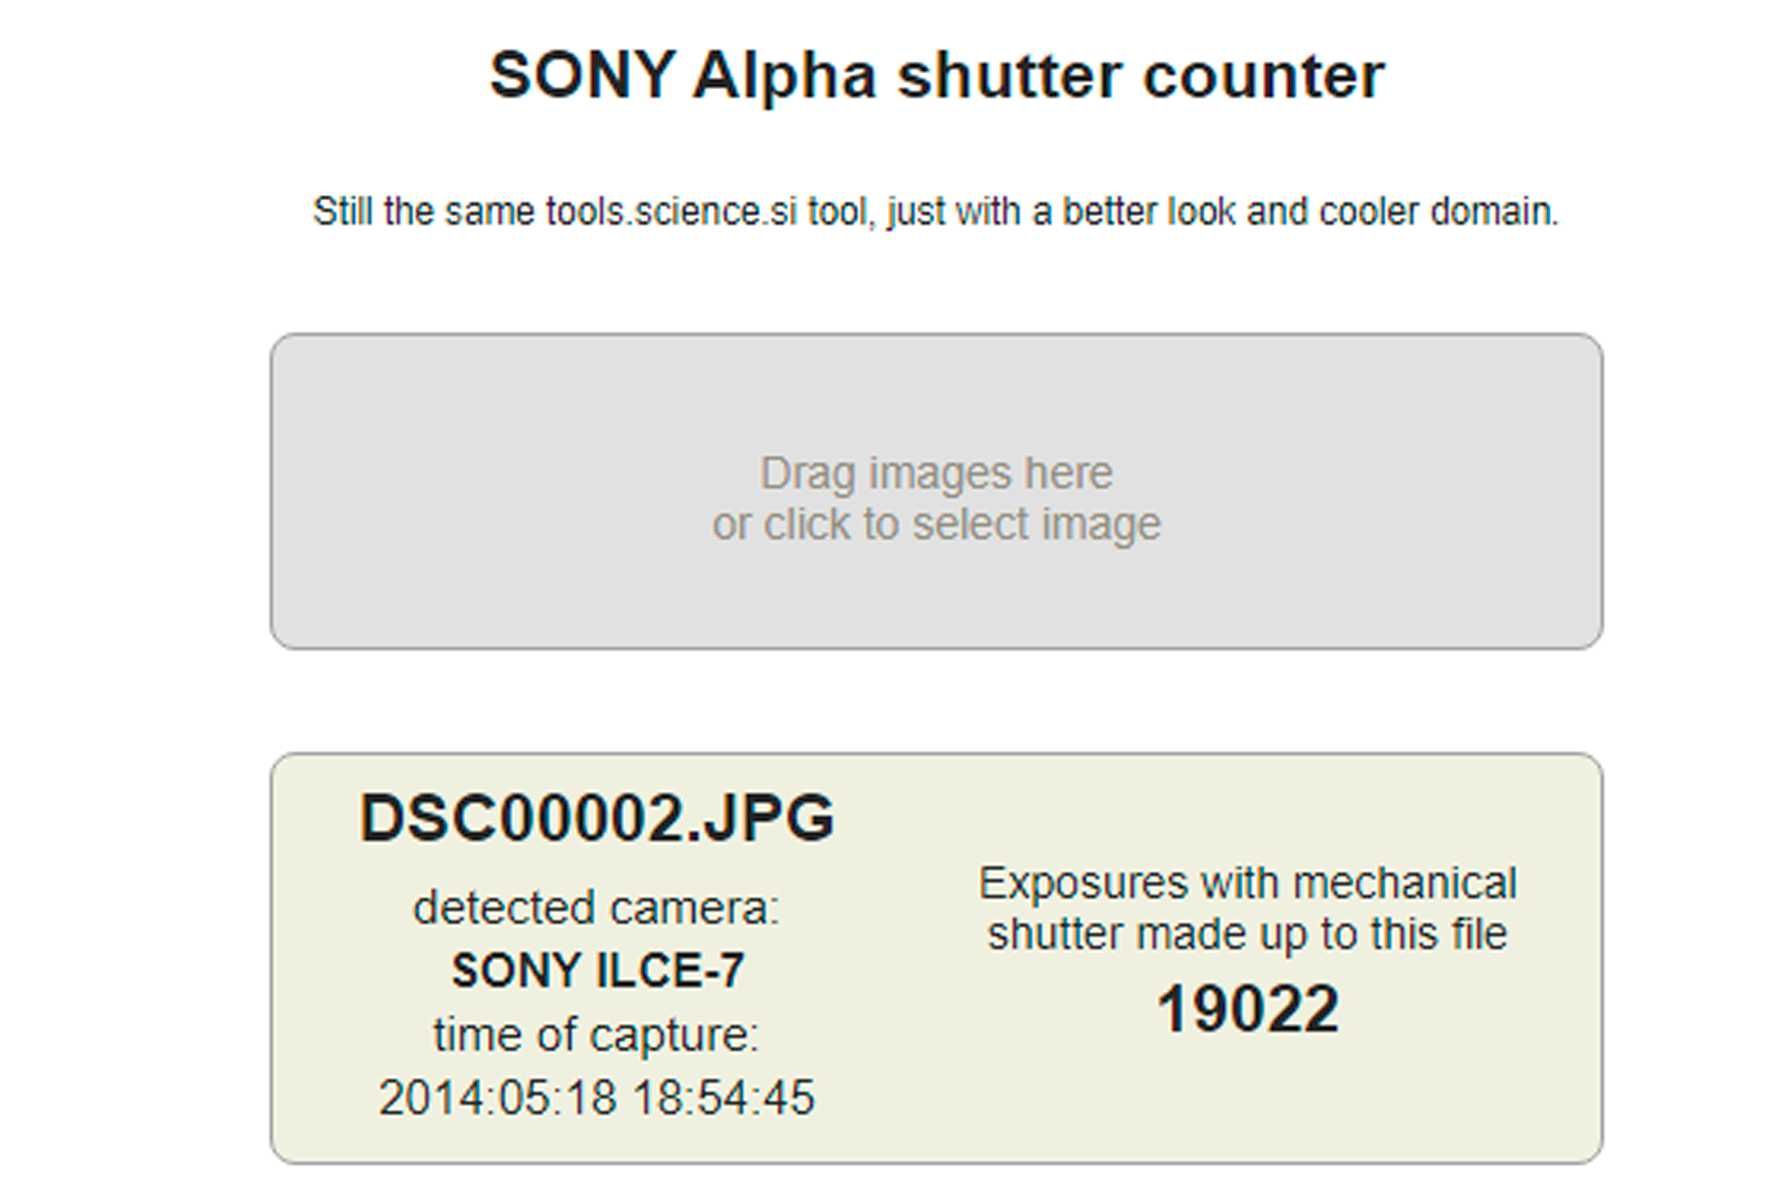 Maquina Sony a7 c lente